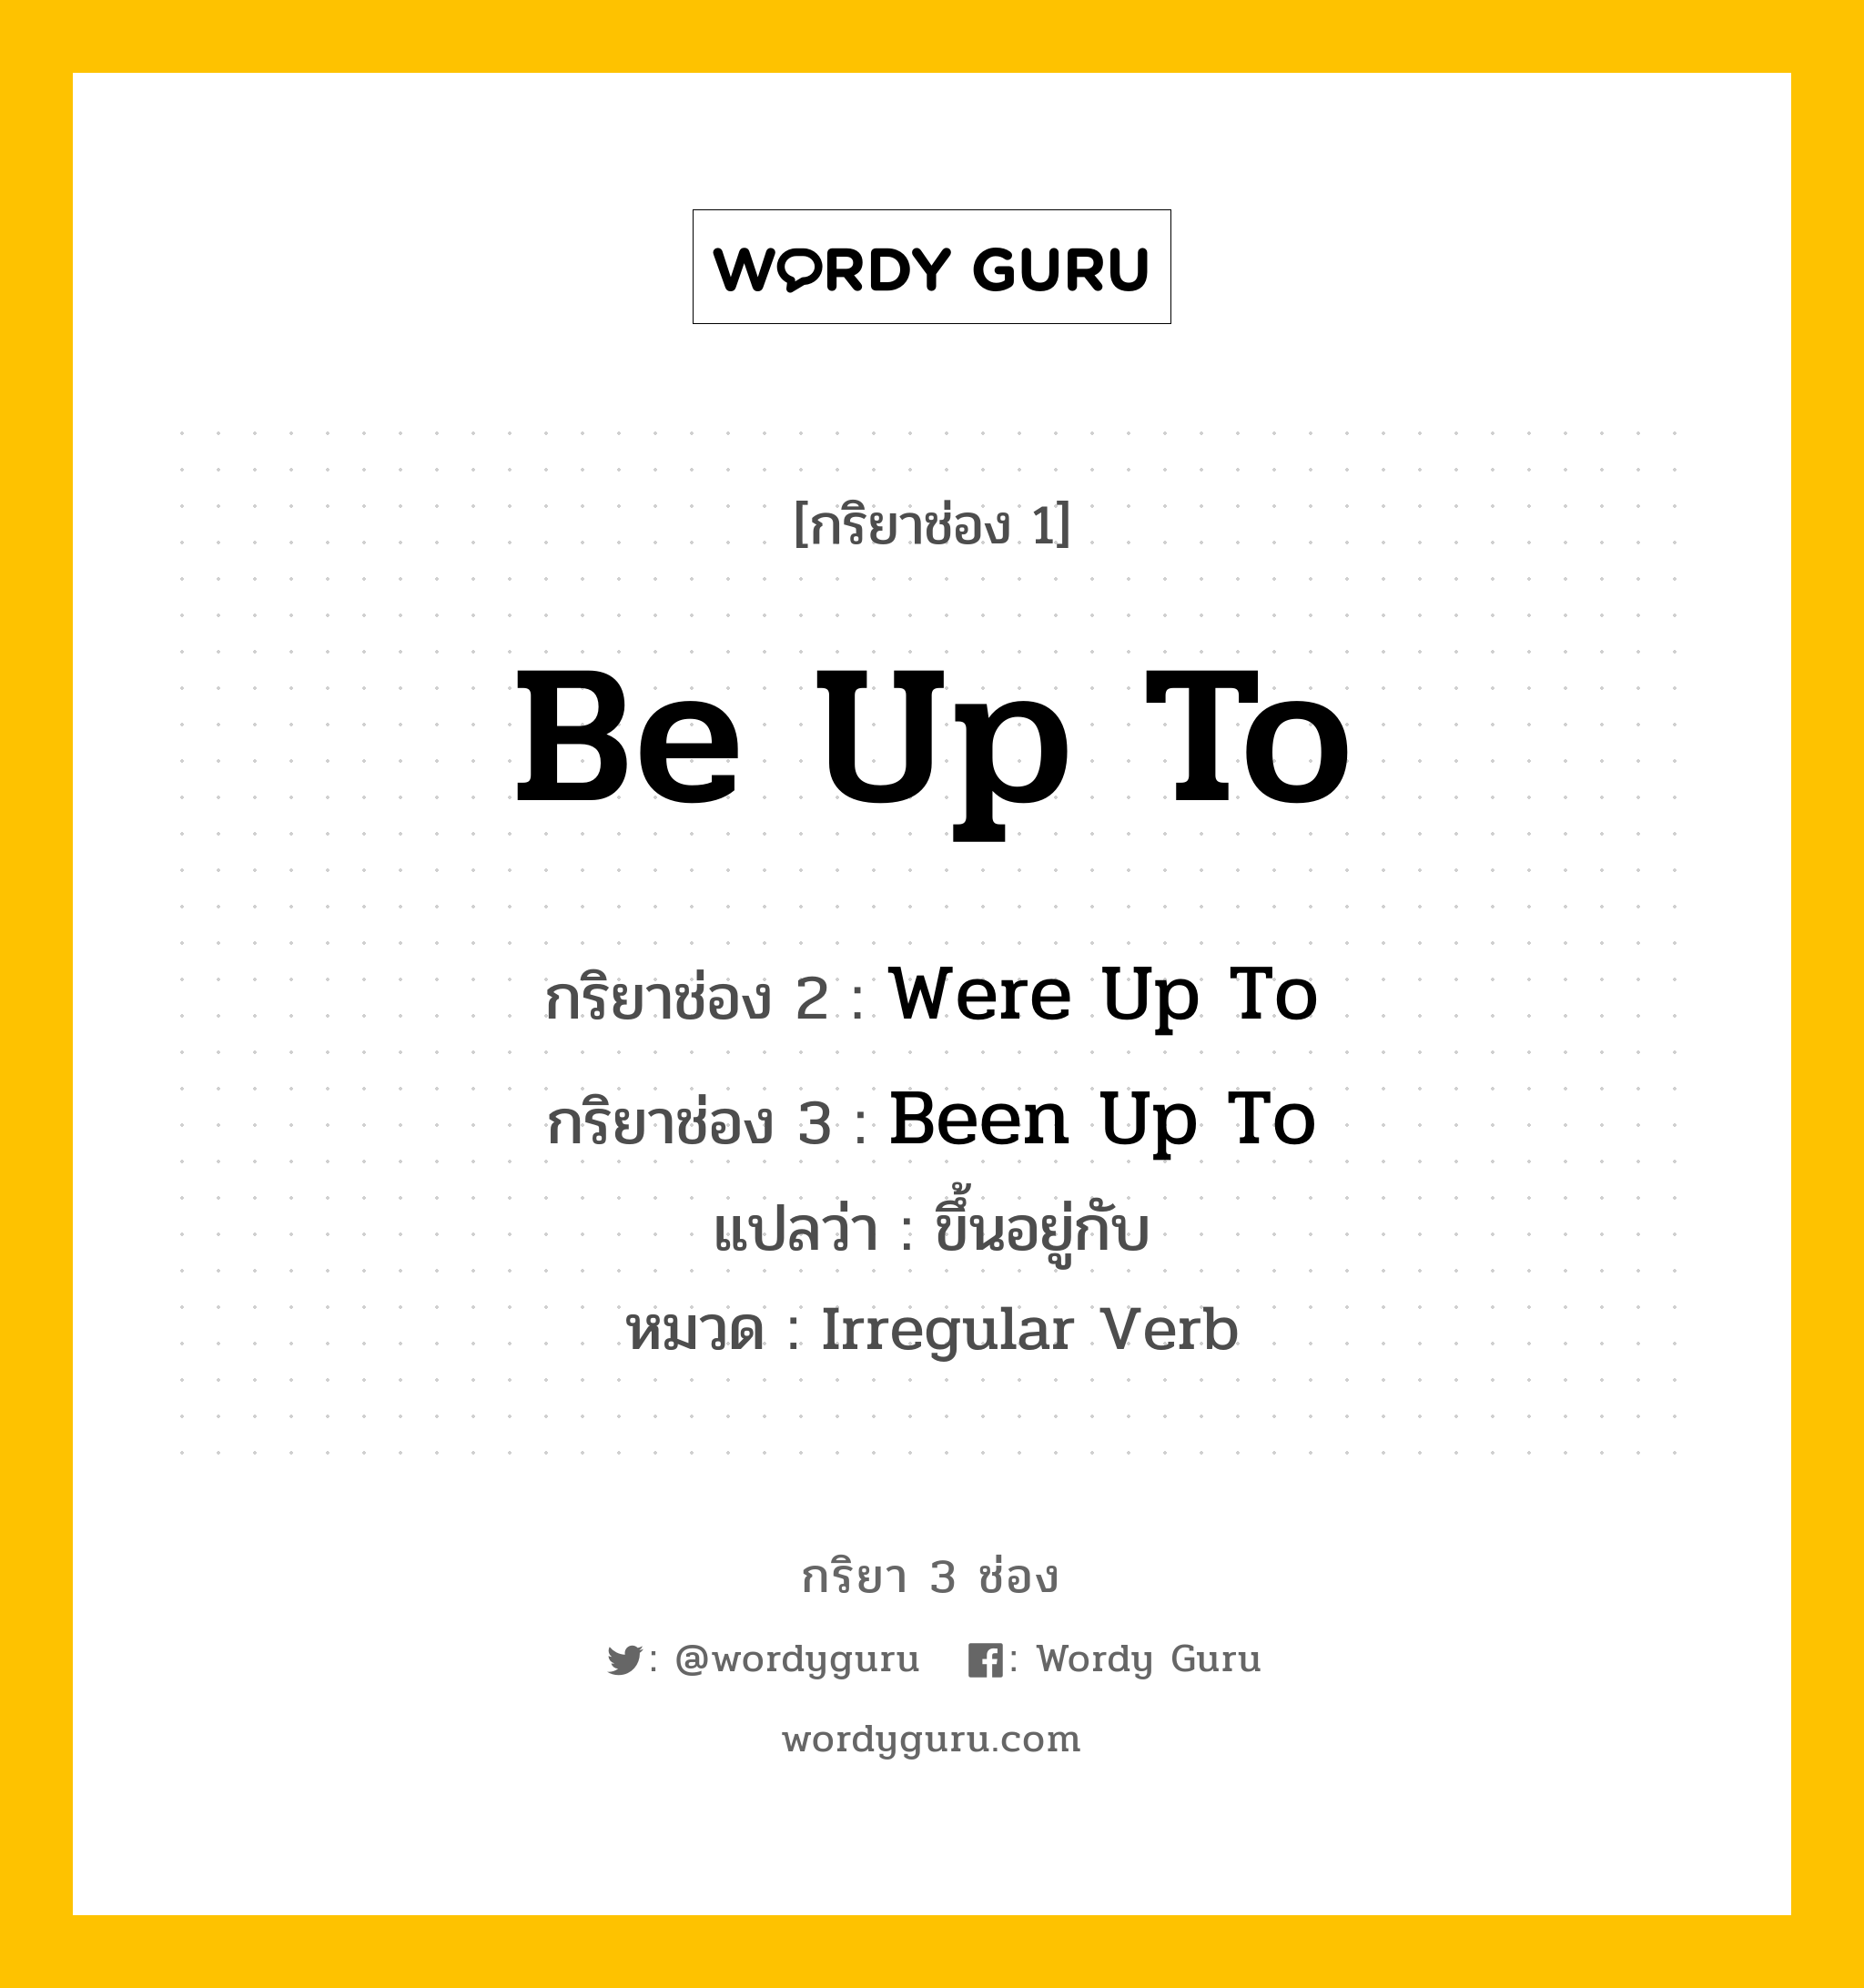 กริยา 3 ช่อง: Be Up To ช่อง 2 Be Up To ช่อง 3 คืออะไร, กริยาช่อง 1 Be Up To กริยาช่อง 2 Were Up To กริยาช่อง 3 Been Up To แปลว่า ขึ้นอยู่กับ หมวด Irregular Verb หมวด Irregular Verb